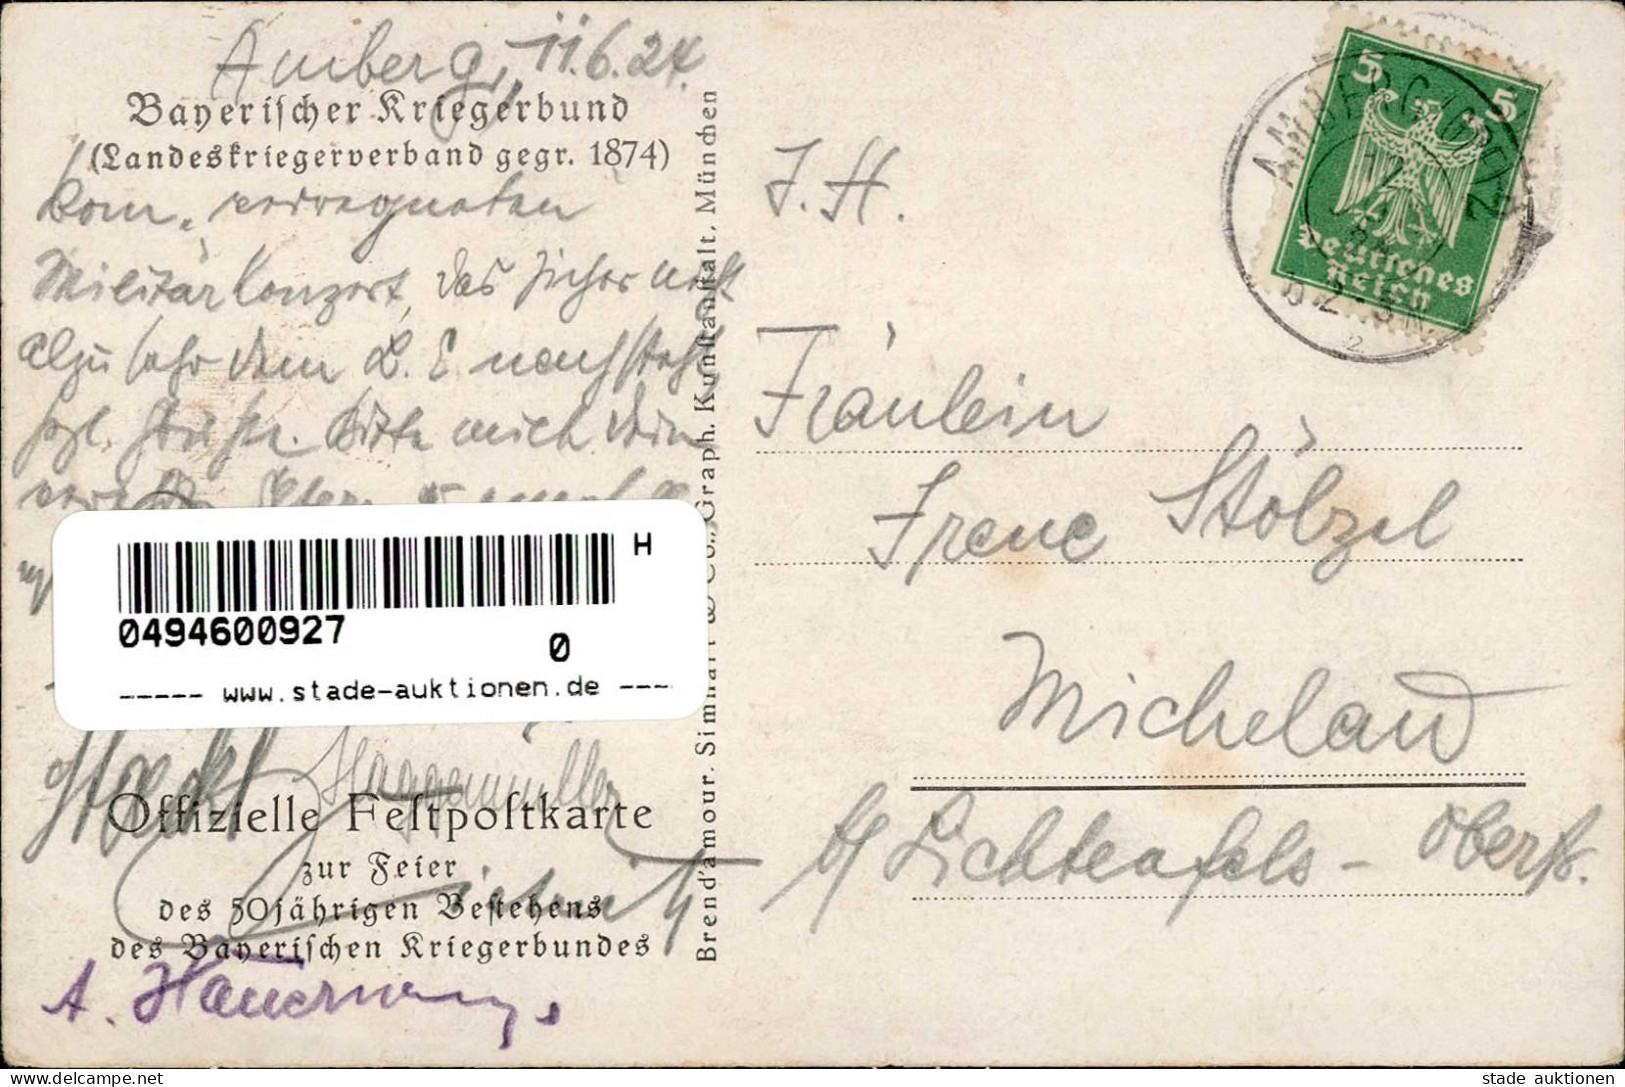 Regiment Byrischer Kriegerbund 50. Jähriges Bestehen Sign. Hoffmann, Anton I-II - Régiments